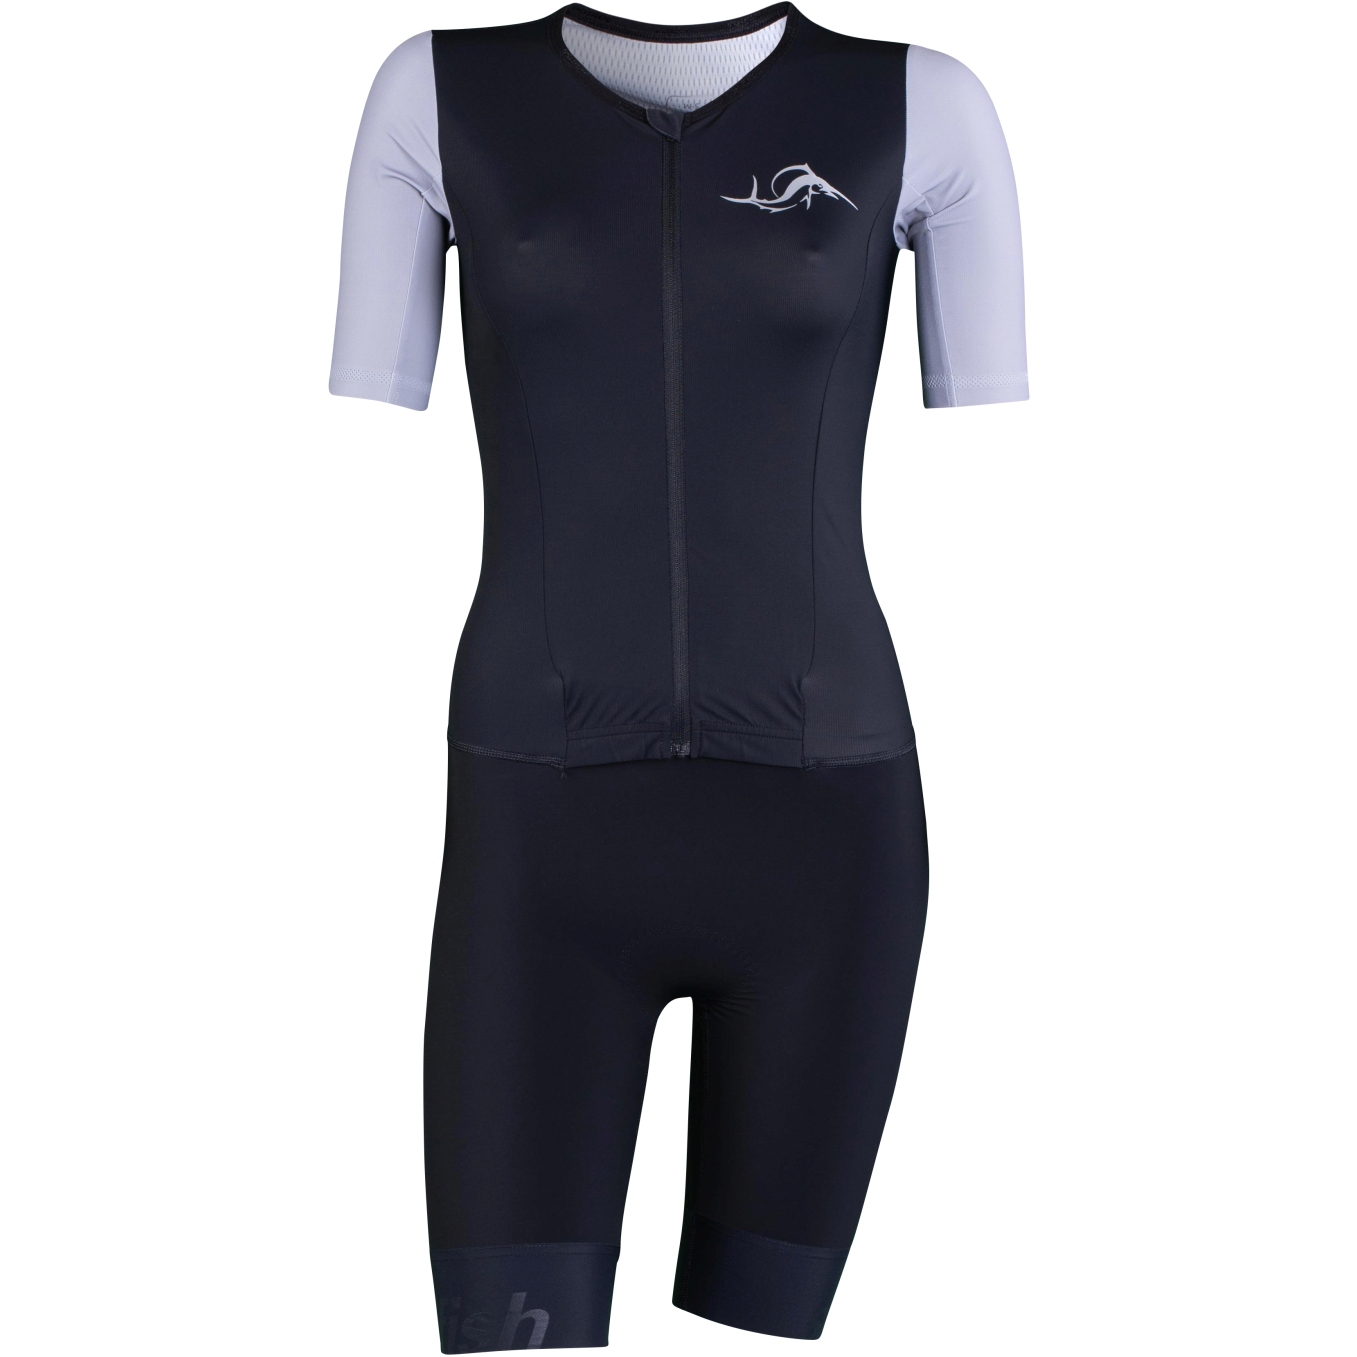 Produktbild von sailfish Damen Aerosuit Perform Triathlon-Einteiler - schwarz